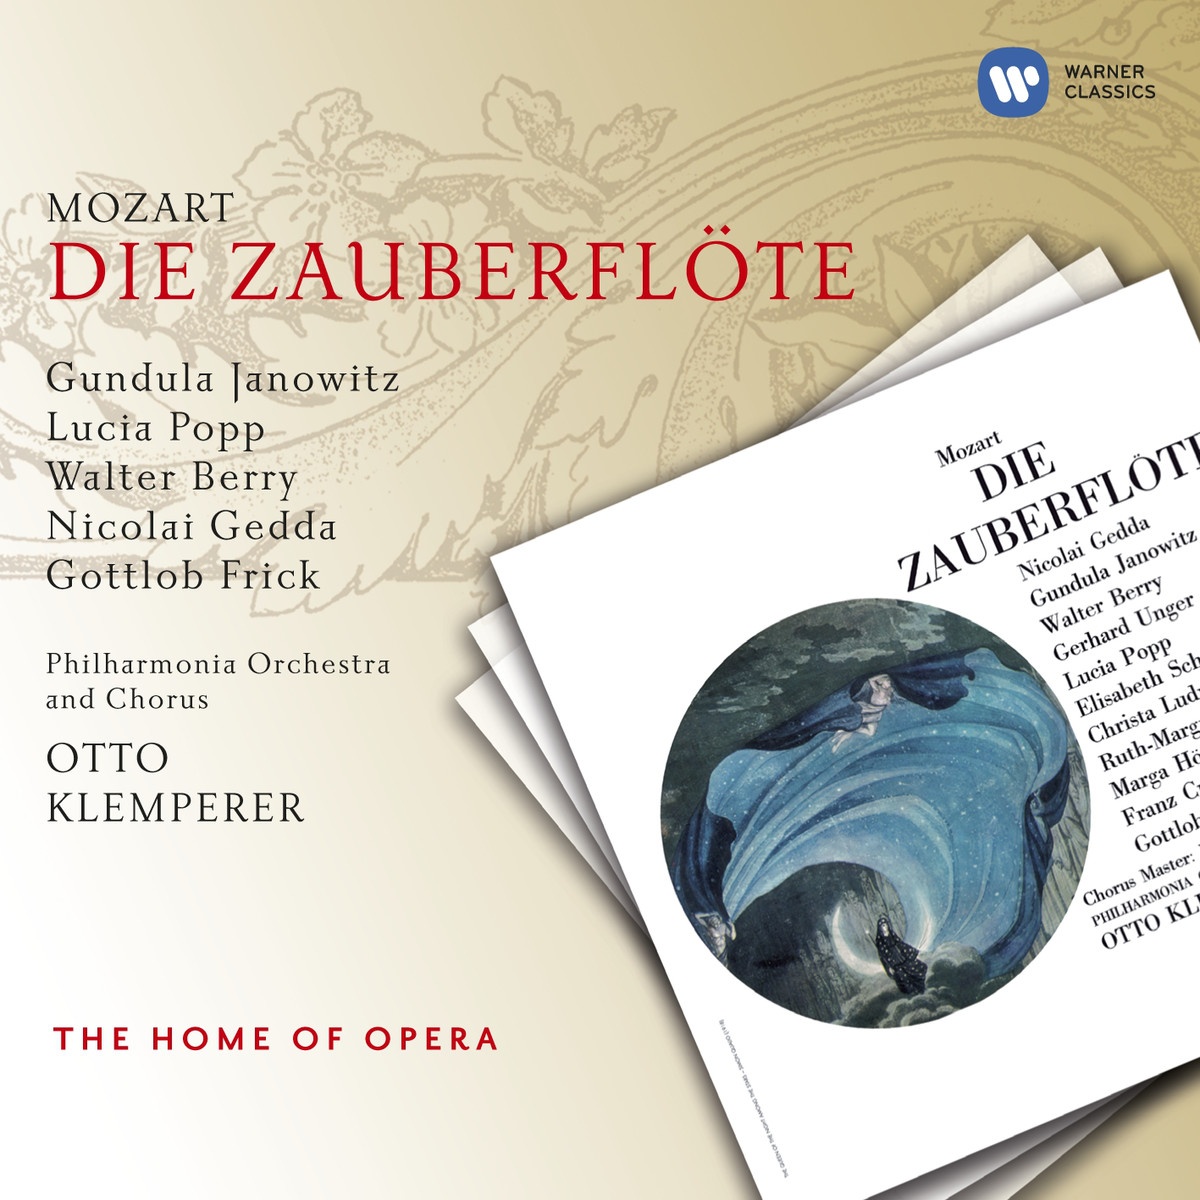 Die Zauberfl te, ' The Magic Flute' K620 2000 Digital Remaster, ACT 2: Die Strahlen der Sonne... Sarastro Chor